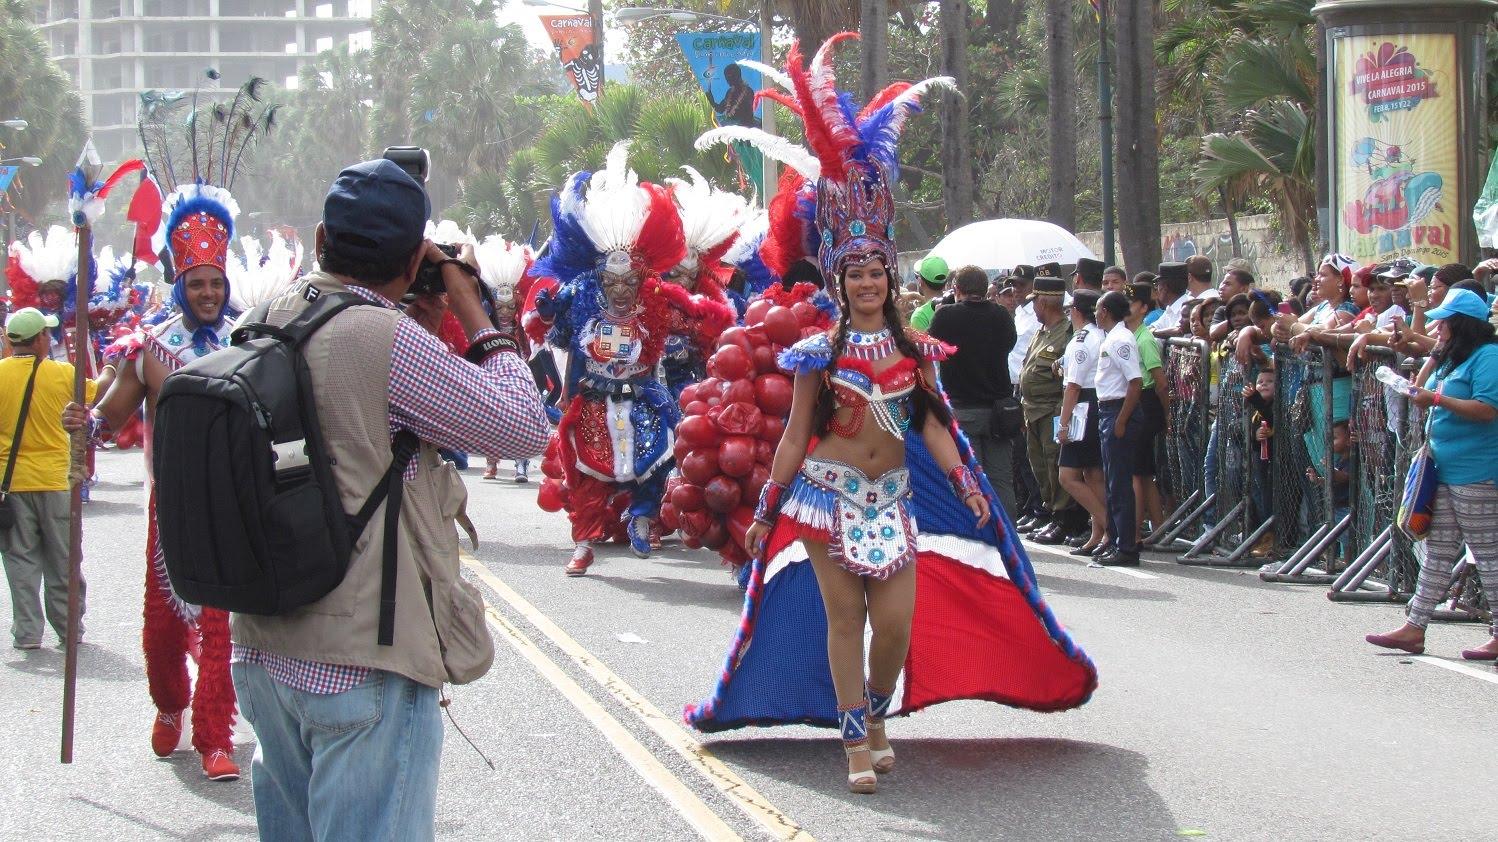 Desfile del Carnaval Latino de Verano reunirá en Salerno a diplomáticos, ciudadanos latinos e italianos